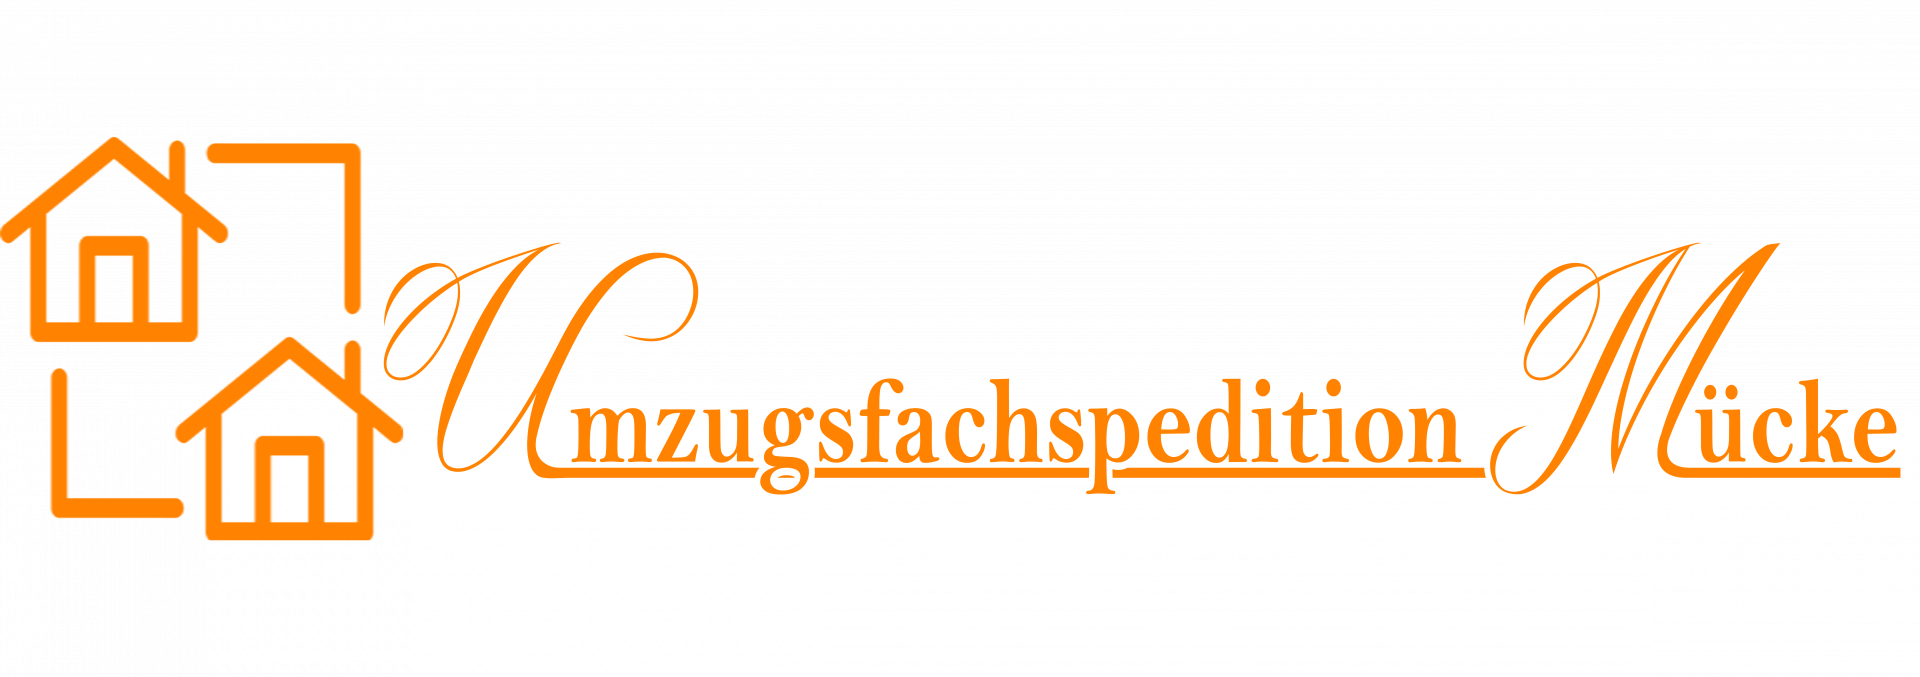 Umzugsfachspedition Logo